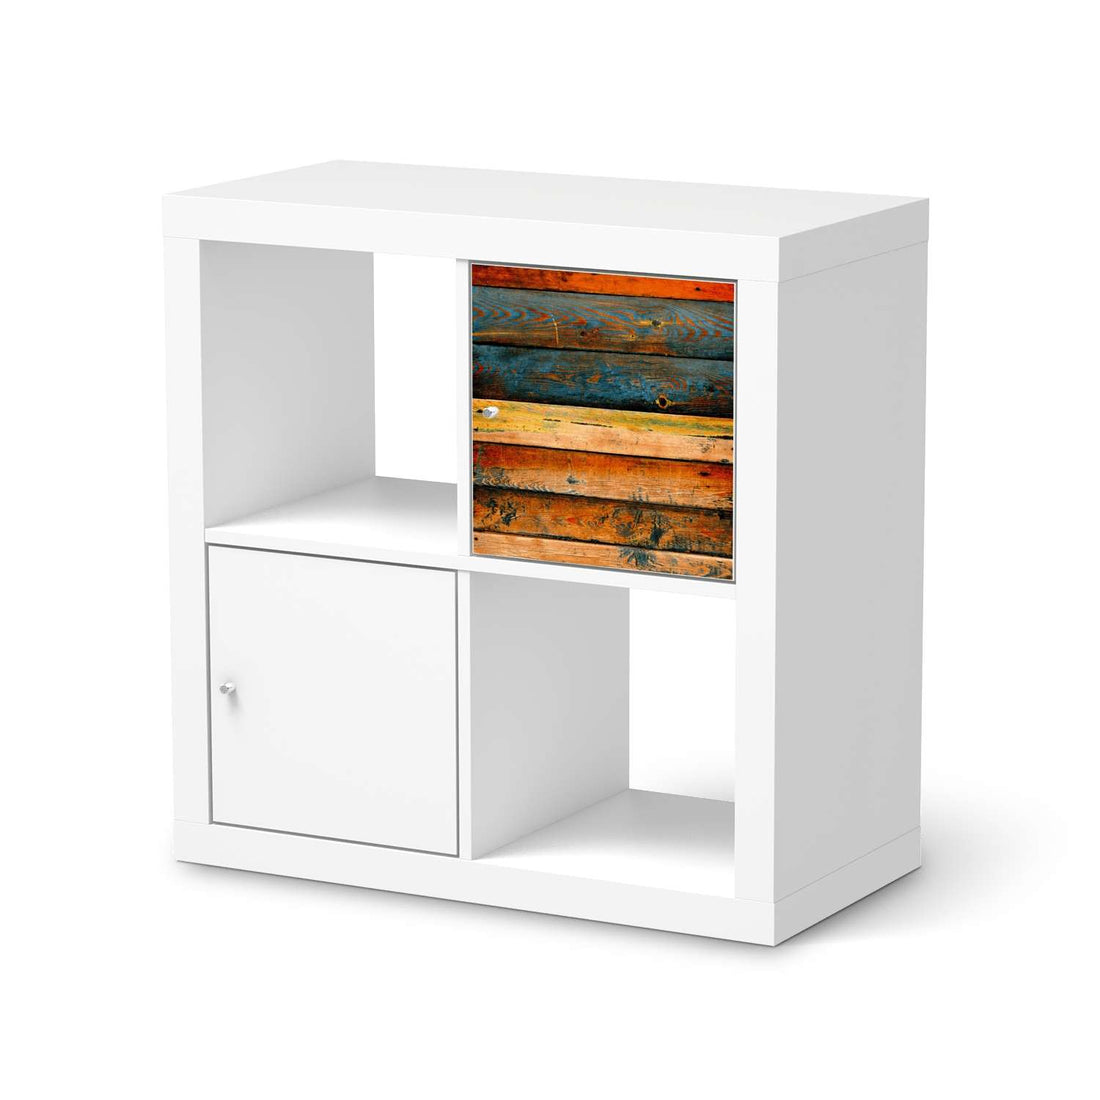 Selbstklebende Folie Wooden - IKEA Kallax Regal 1 Türe  - weiss